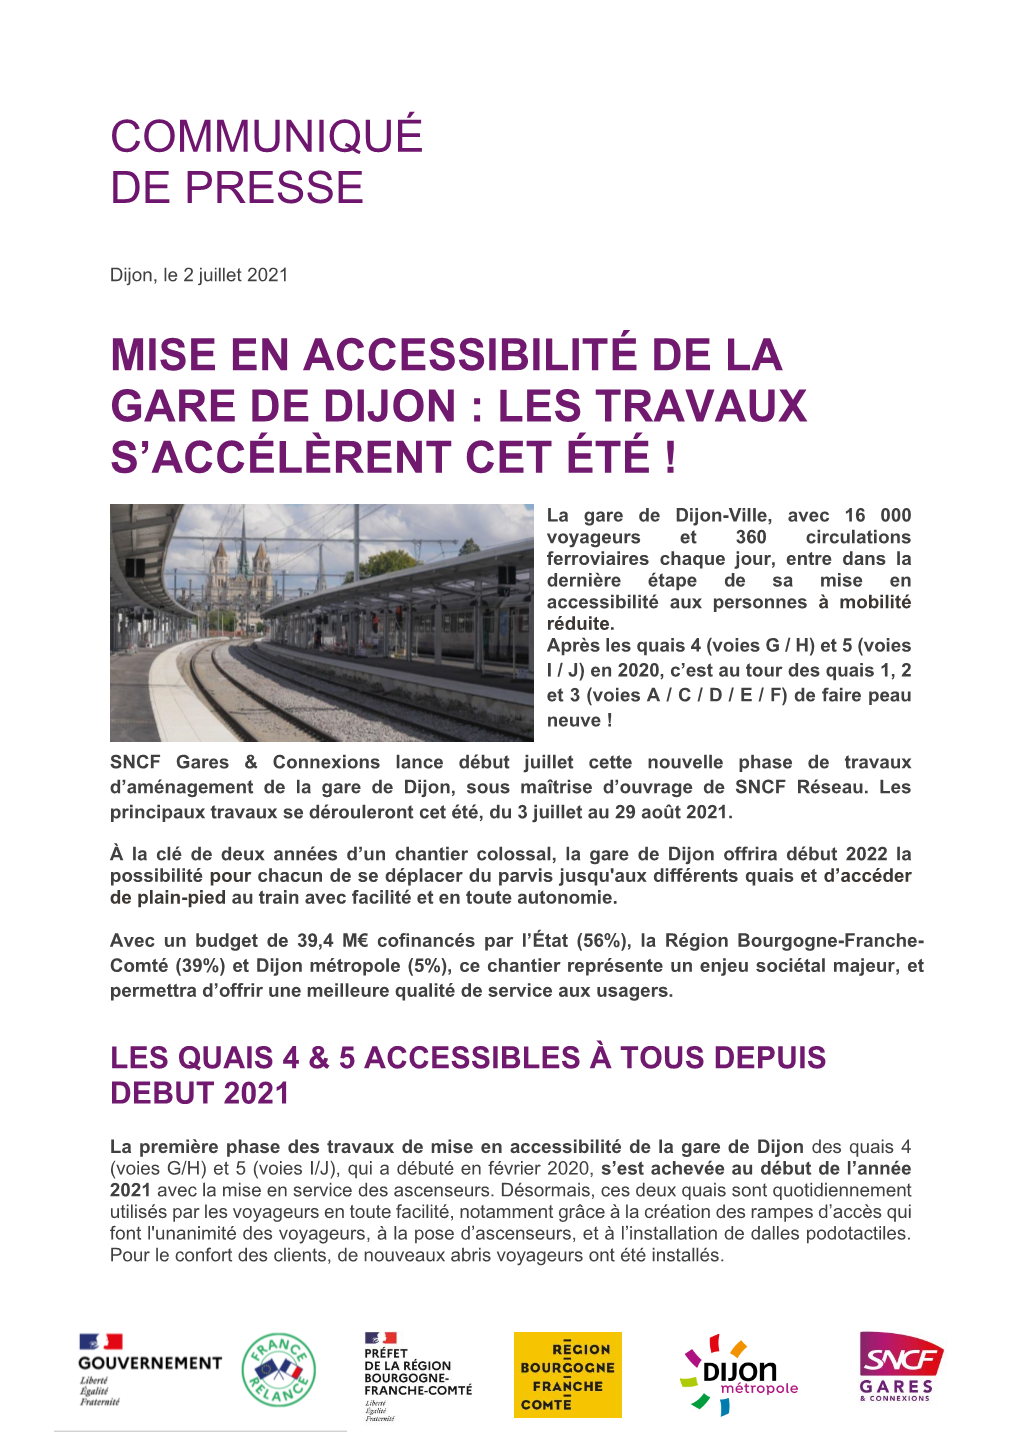 Communiqué De Presse Mise En Accessibilité De La Gare De Dijon : Les Travaux S'accélèrent Cet Été !